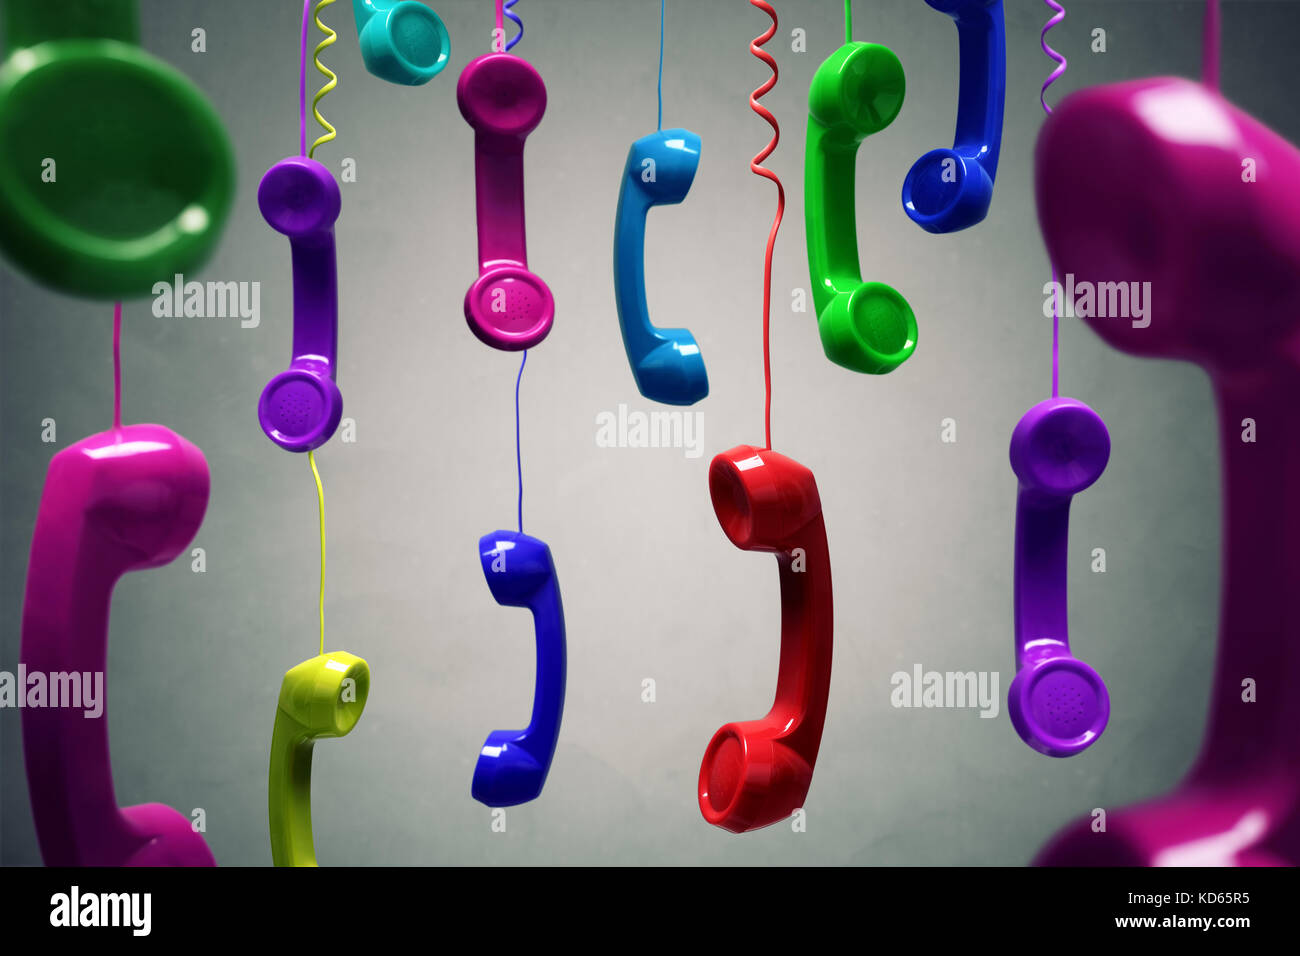 Multi-couleur rouge et récepteur du téléphone qui pèsent sur fond gris pour concept sur le téléphone, le service client, en attente ou contactez-nous Banque D'Images